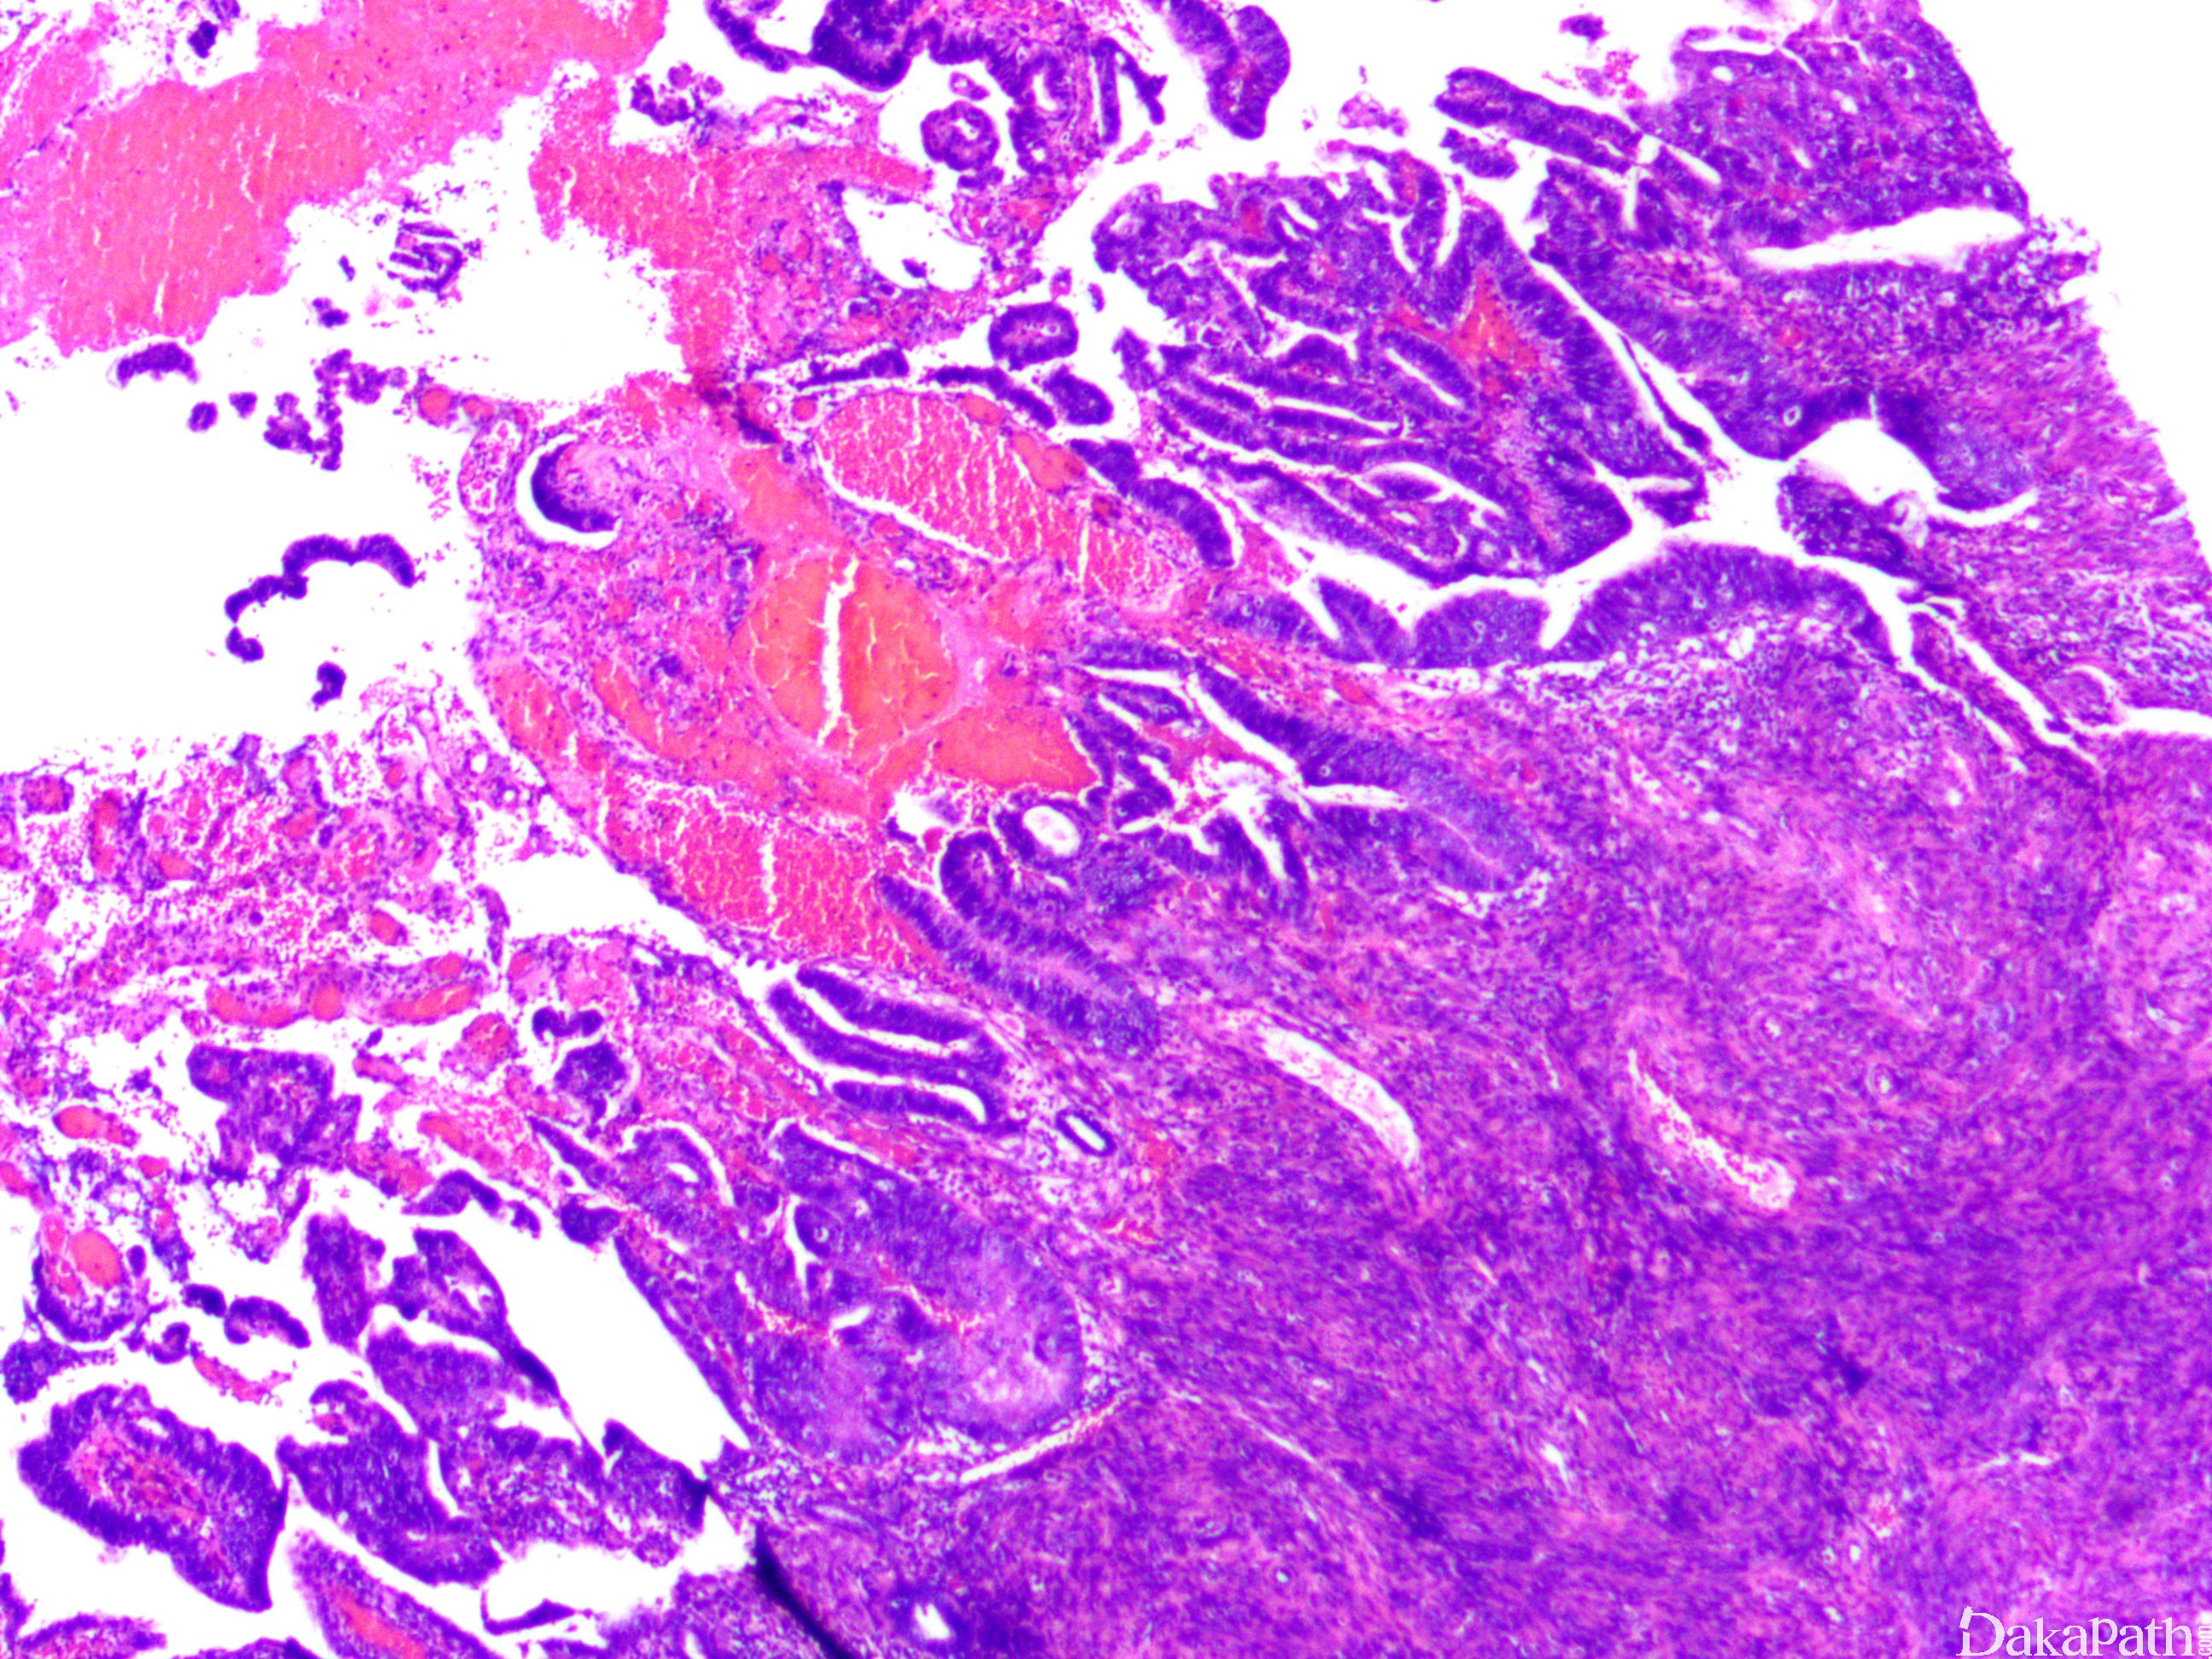 宫体 POLE 突变型内膜样癌合并HPV感染相关性宫颈腺癌1例报道及文献回顾